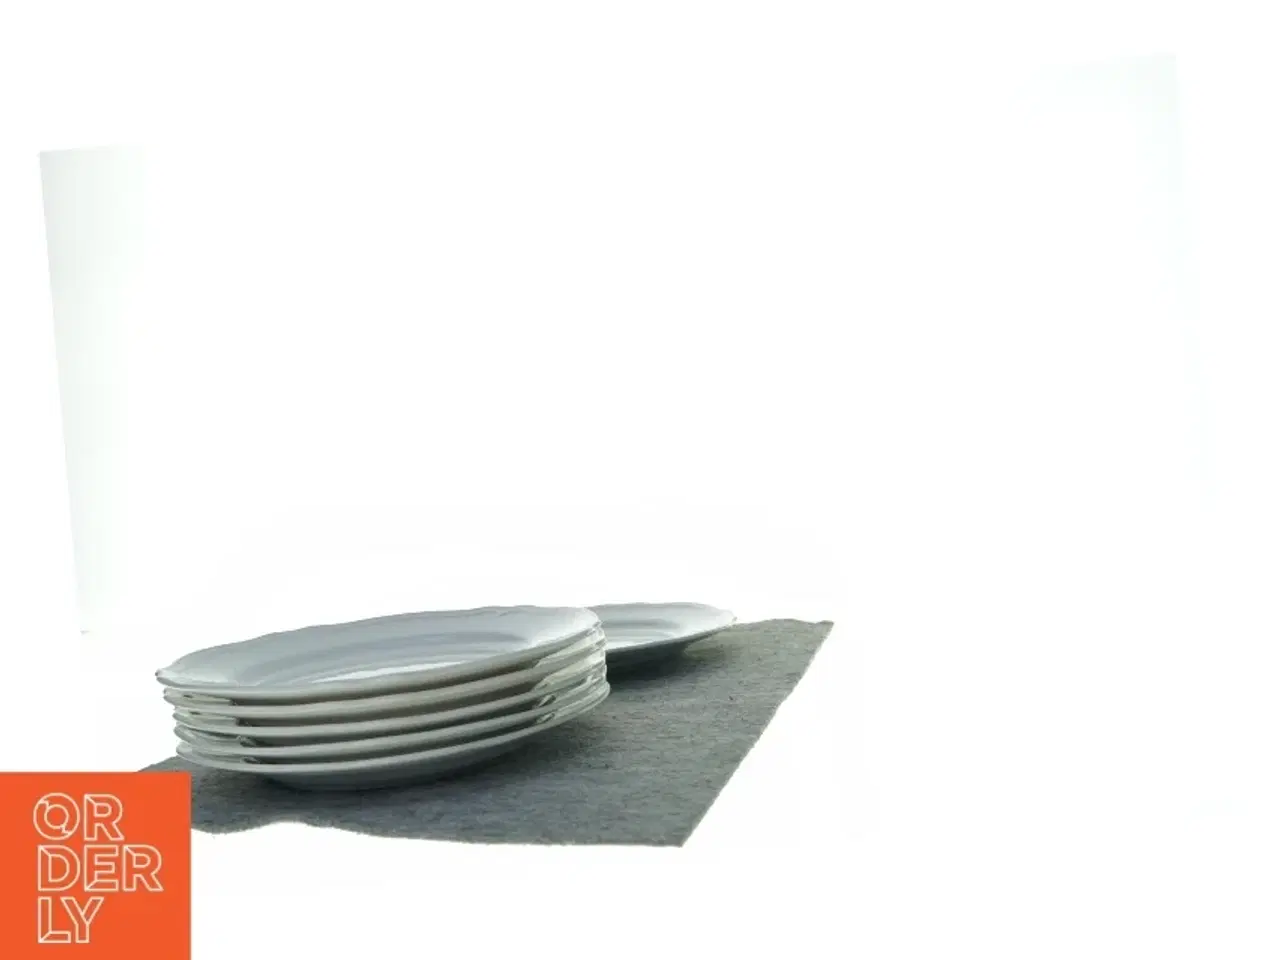 Billede 2 - Spise tallerkener fra IKEA (str. 30 cm)